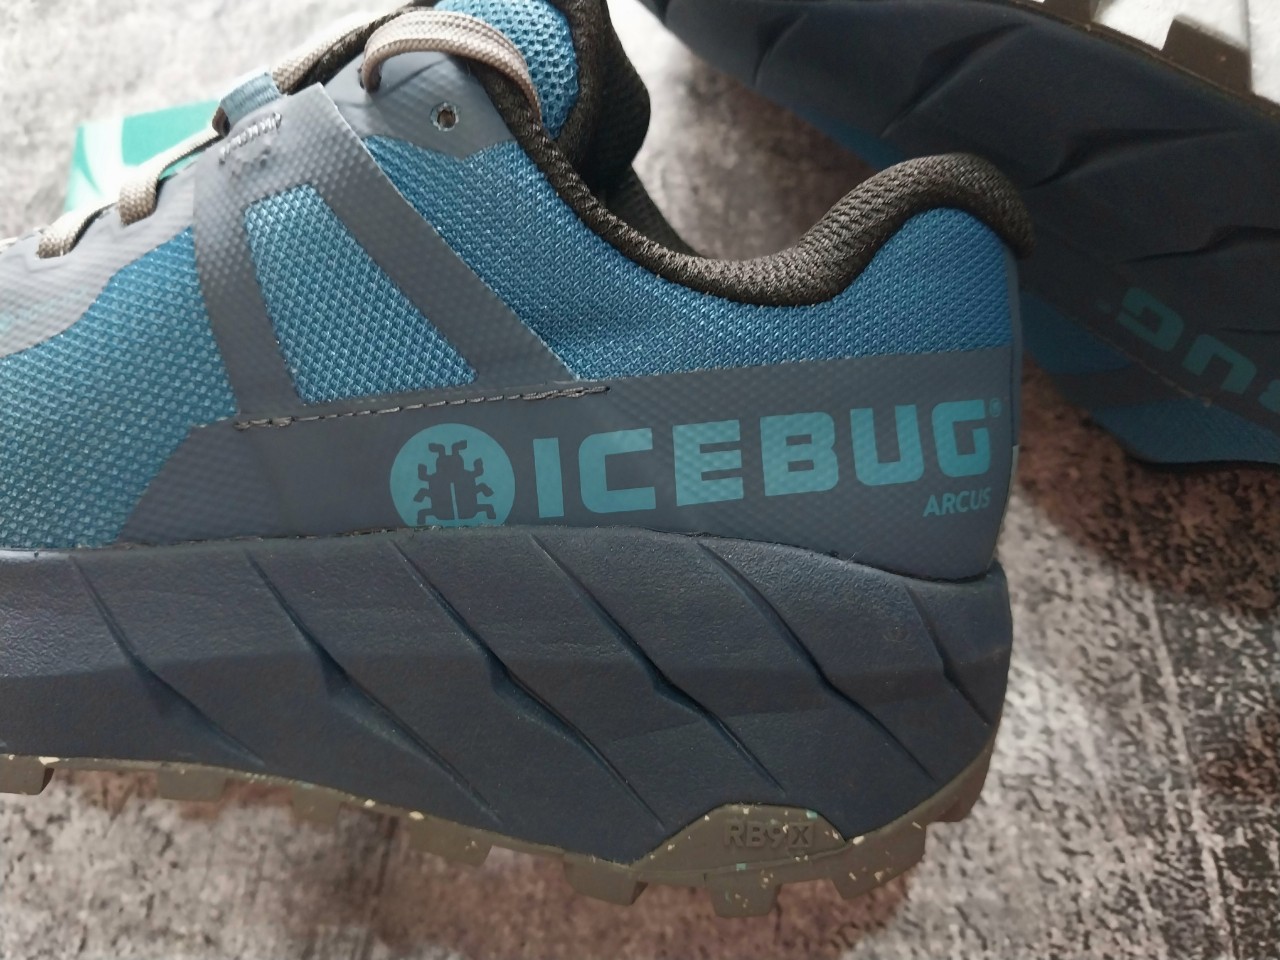 Giày leo núi I.C.E B.u.g GTX chống nước - Xanh